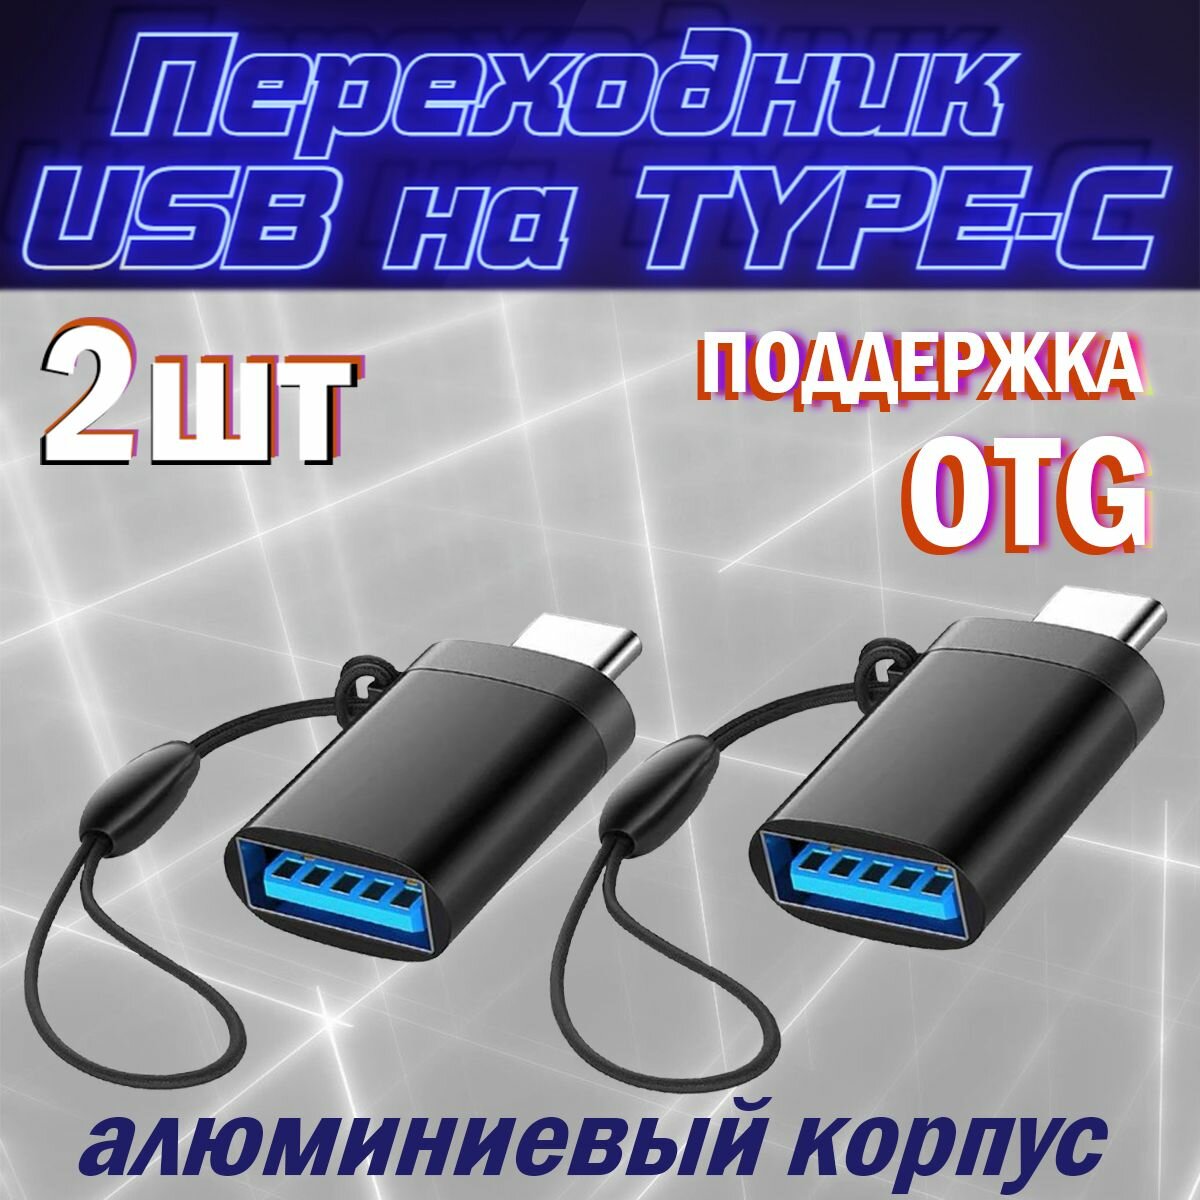 Переходник USB на TYPE-C / OTG / для мобильных устройств